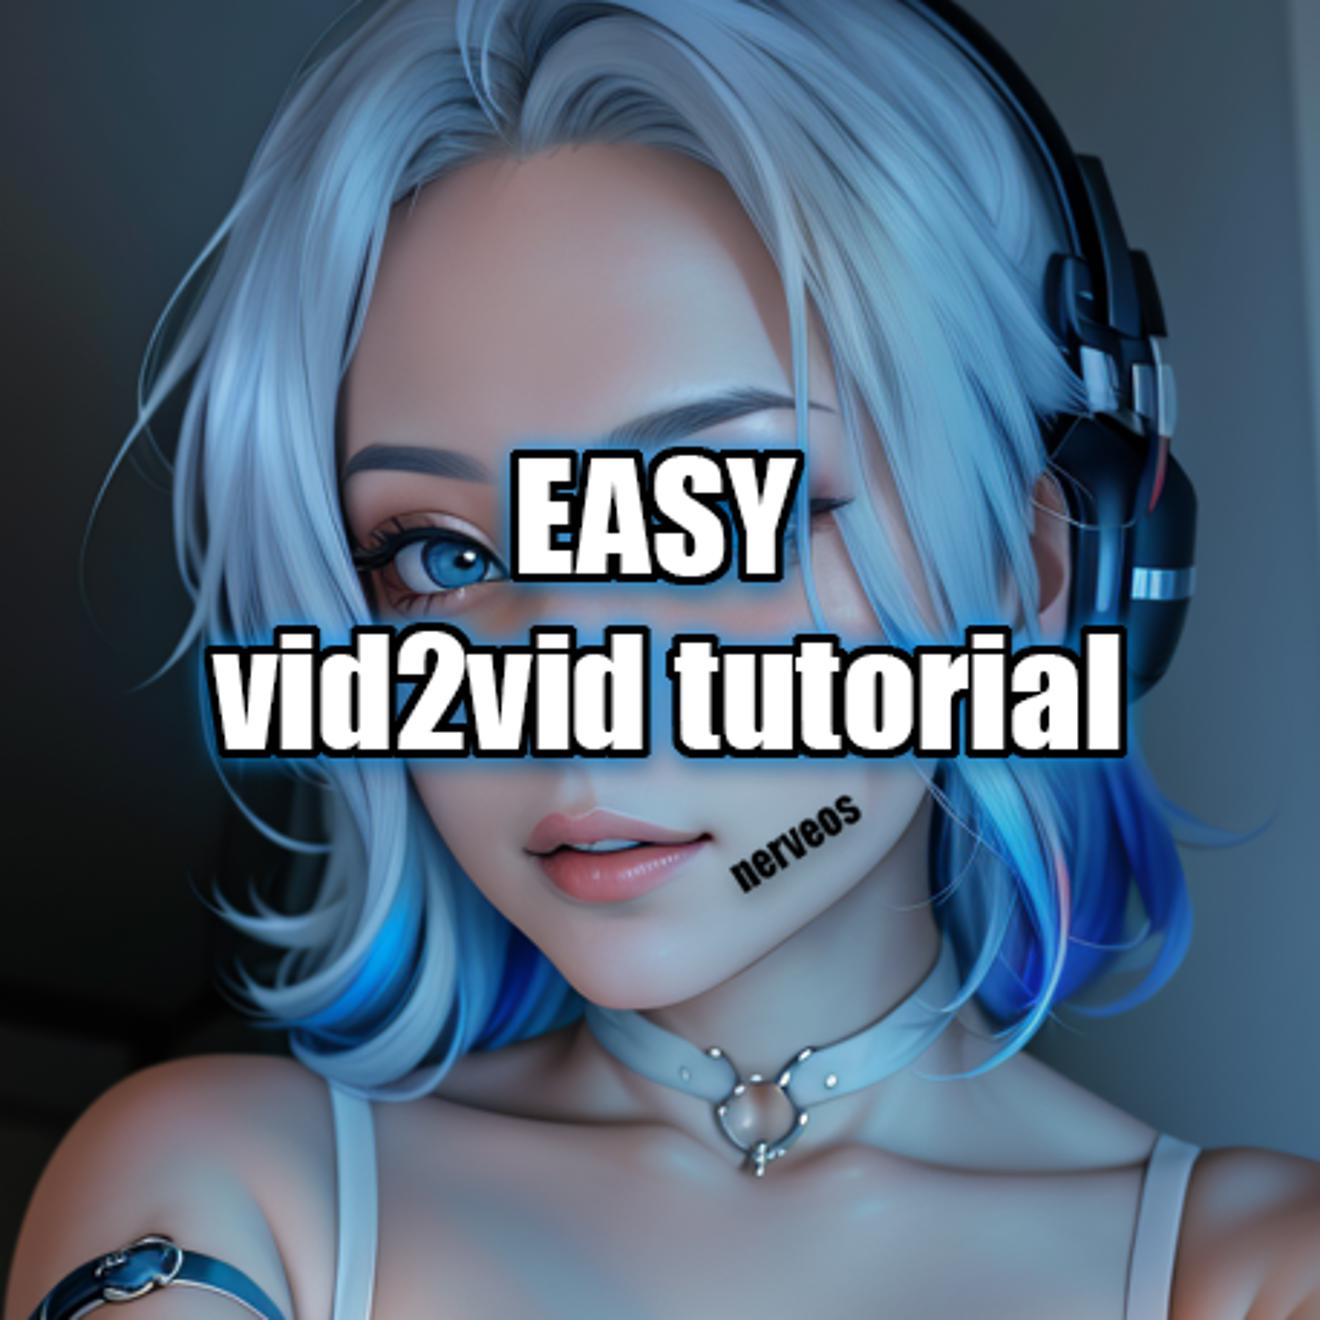 Vid2vid tutorial